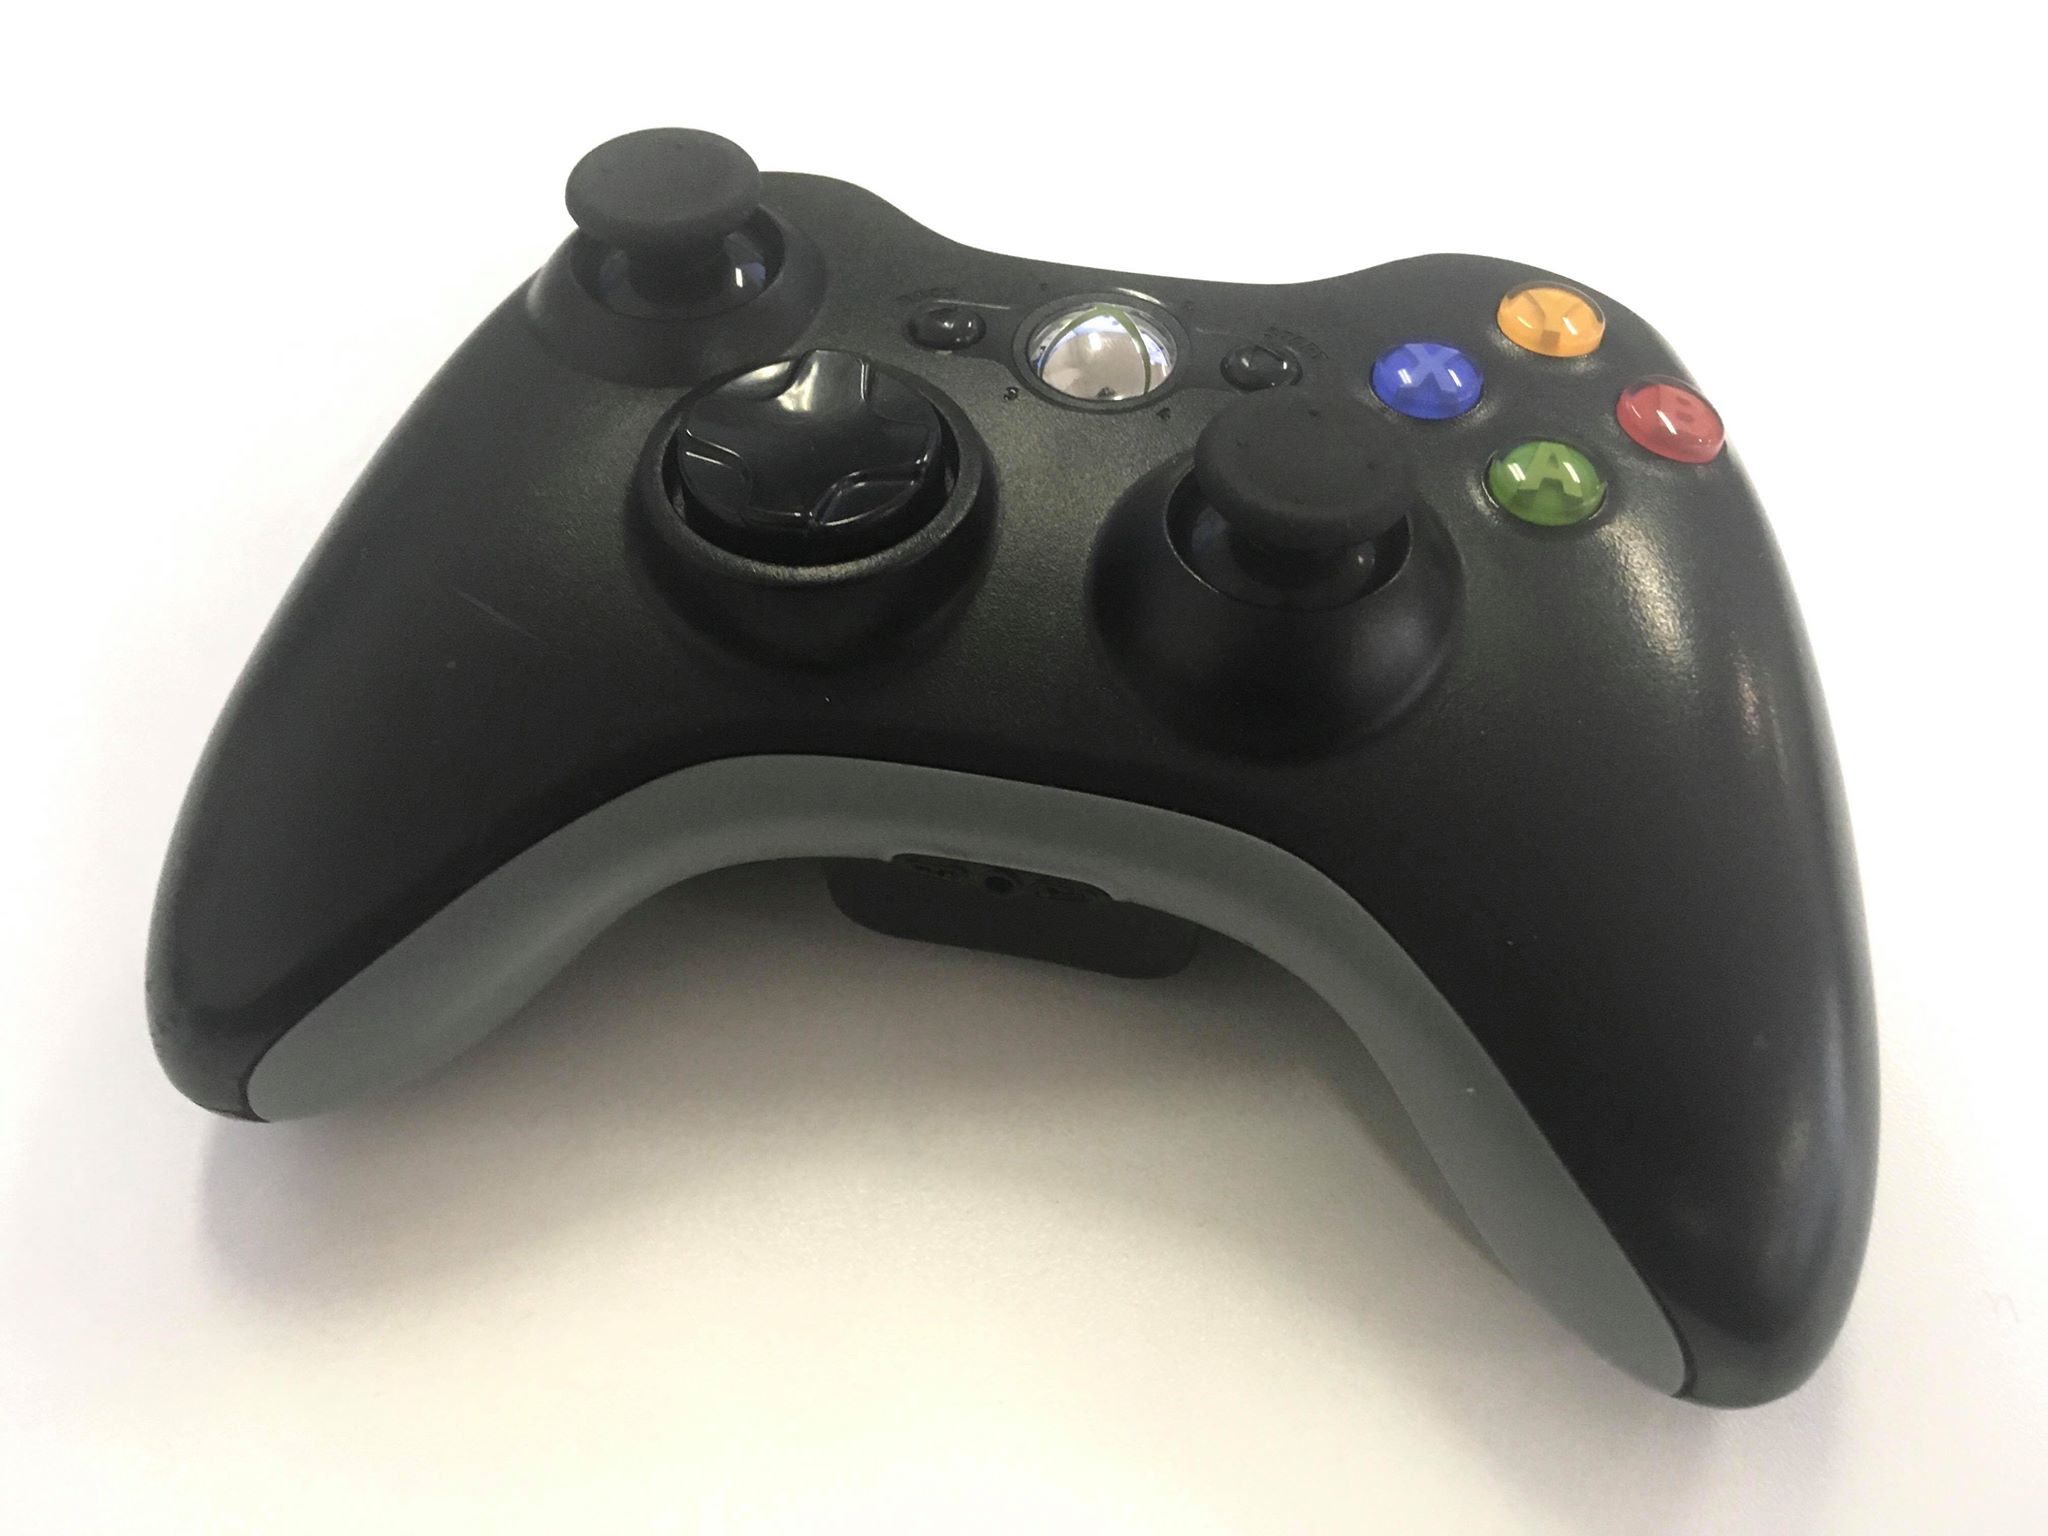 Xbox 360 Controller